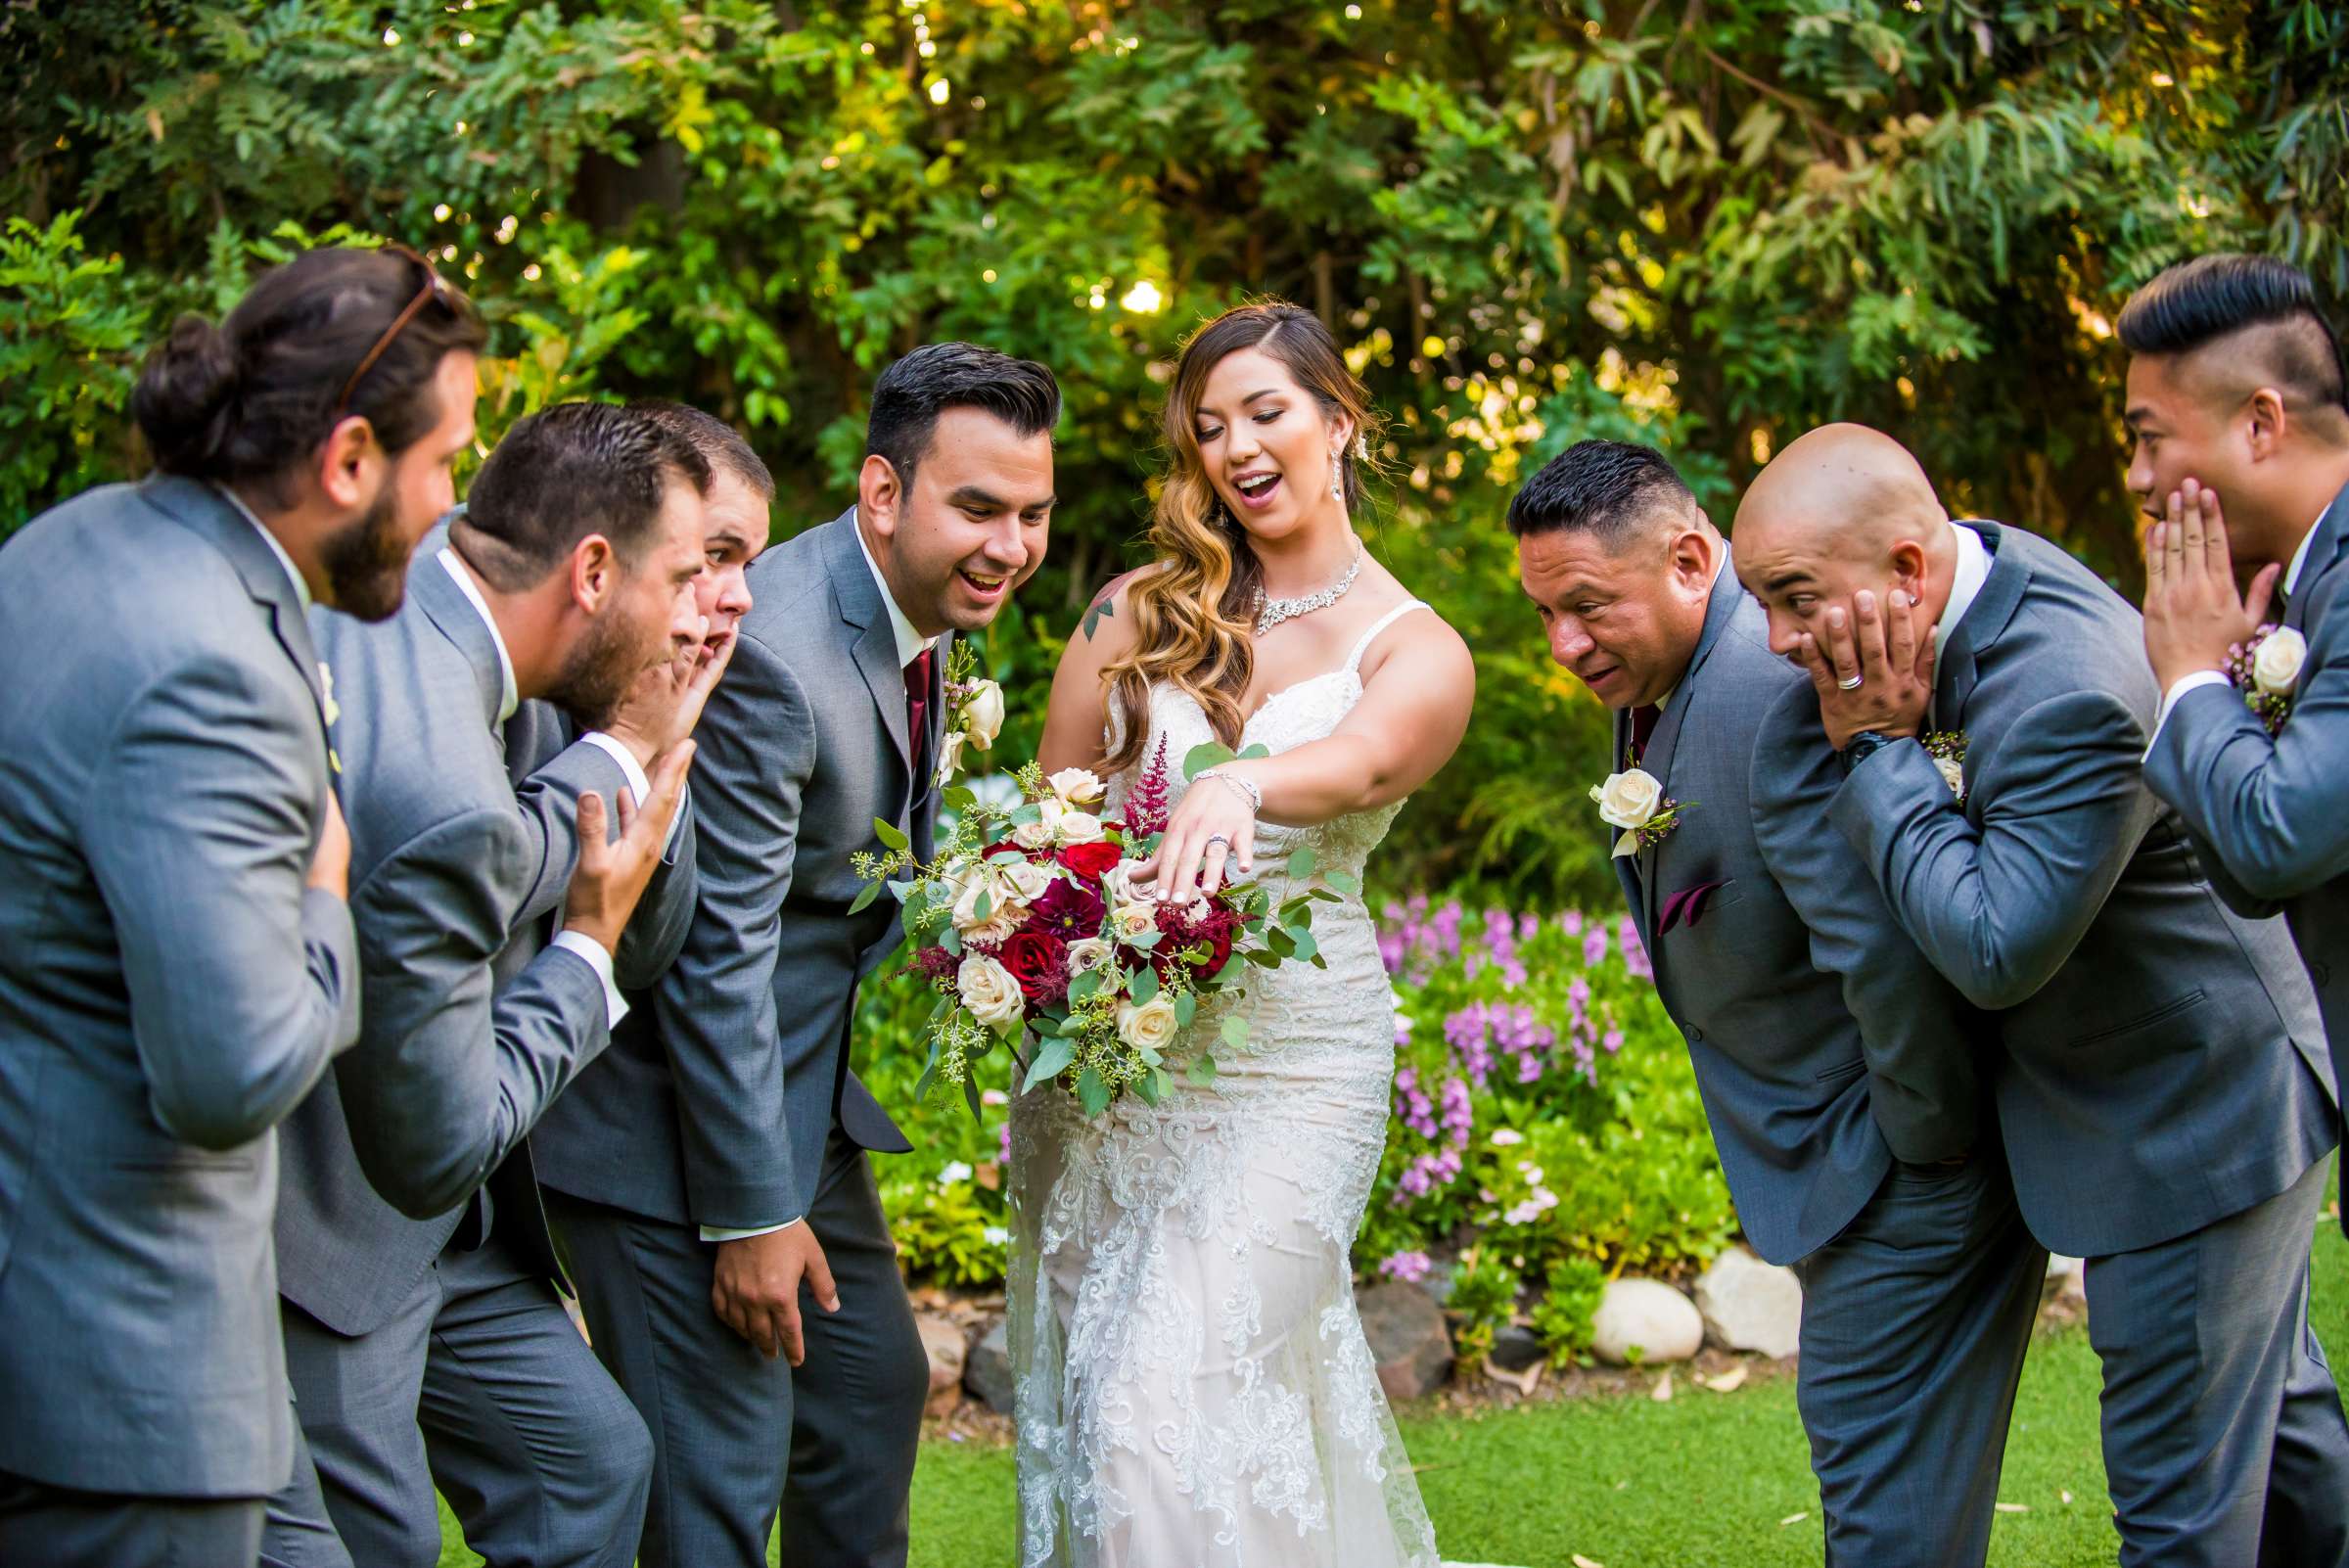 Twin Oaks House & Gardens Wedding Estate Wedding, Merrilynn and Trey Wedding Photo #103 by True Photography